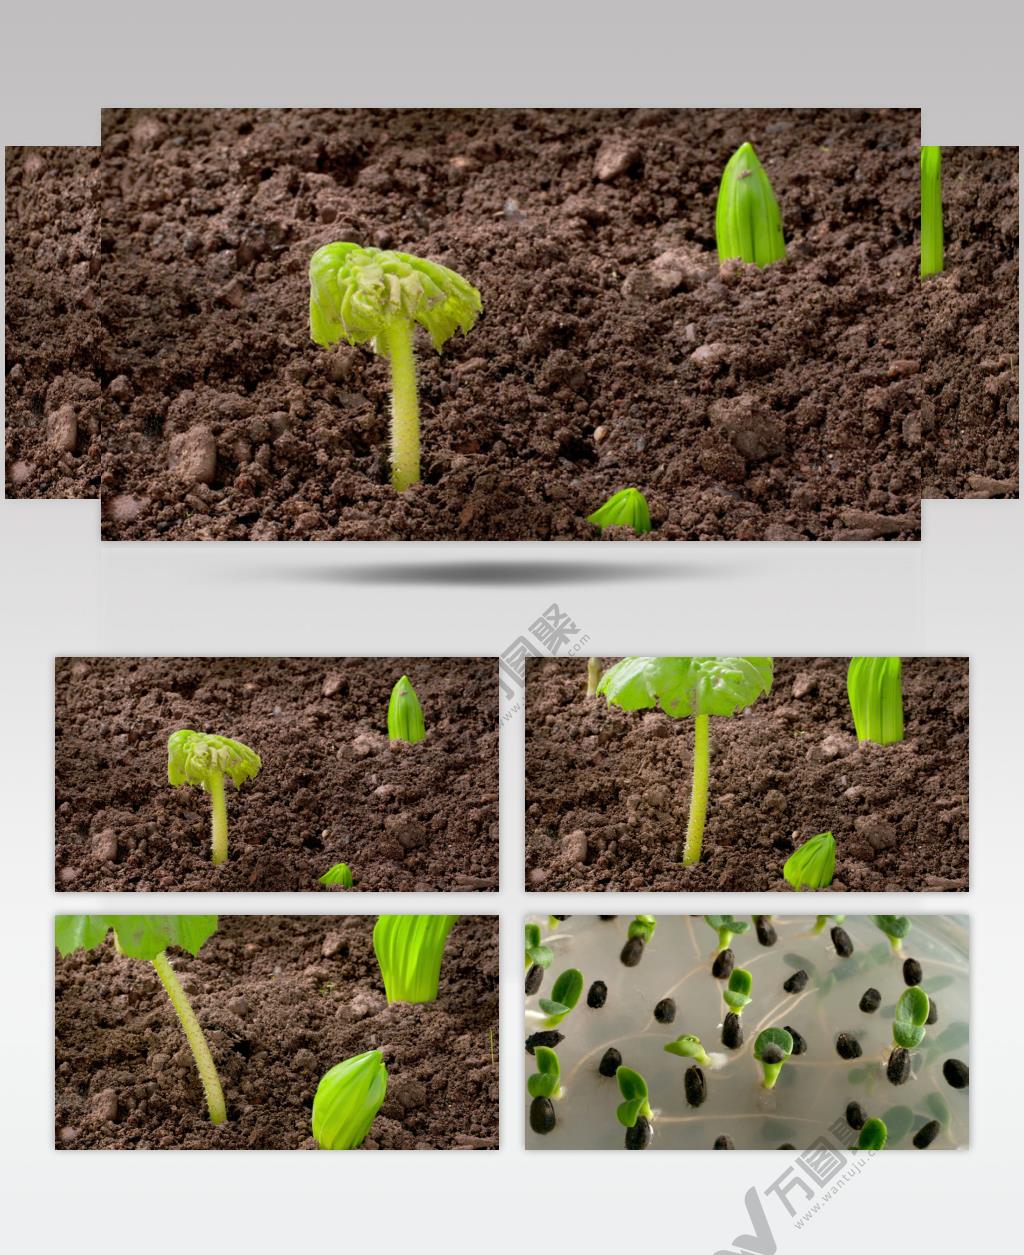 0663-嫩芽快速生长1 15-植物快速生长-1